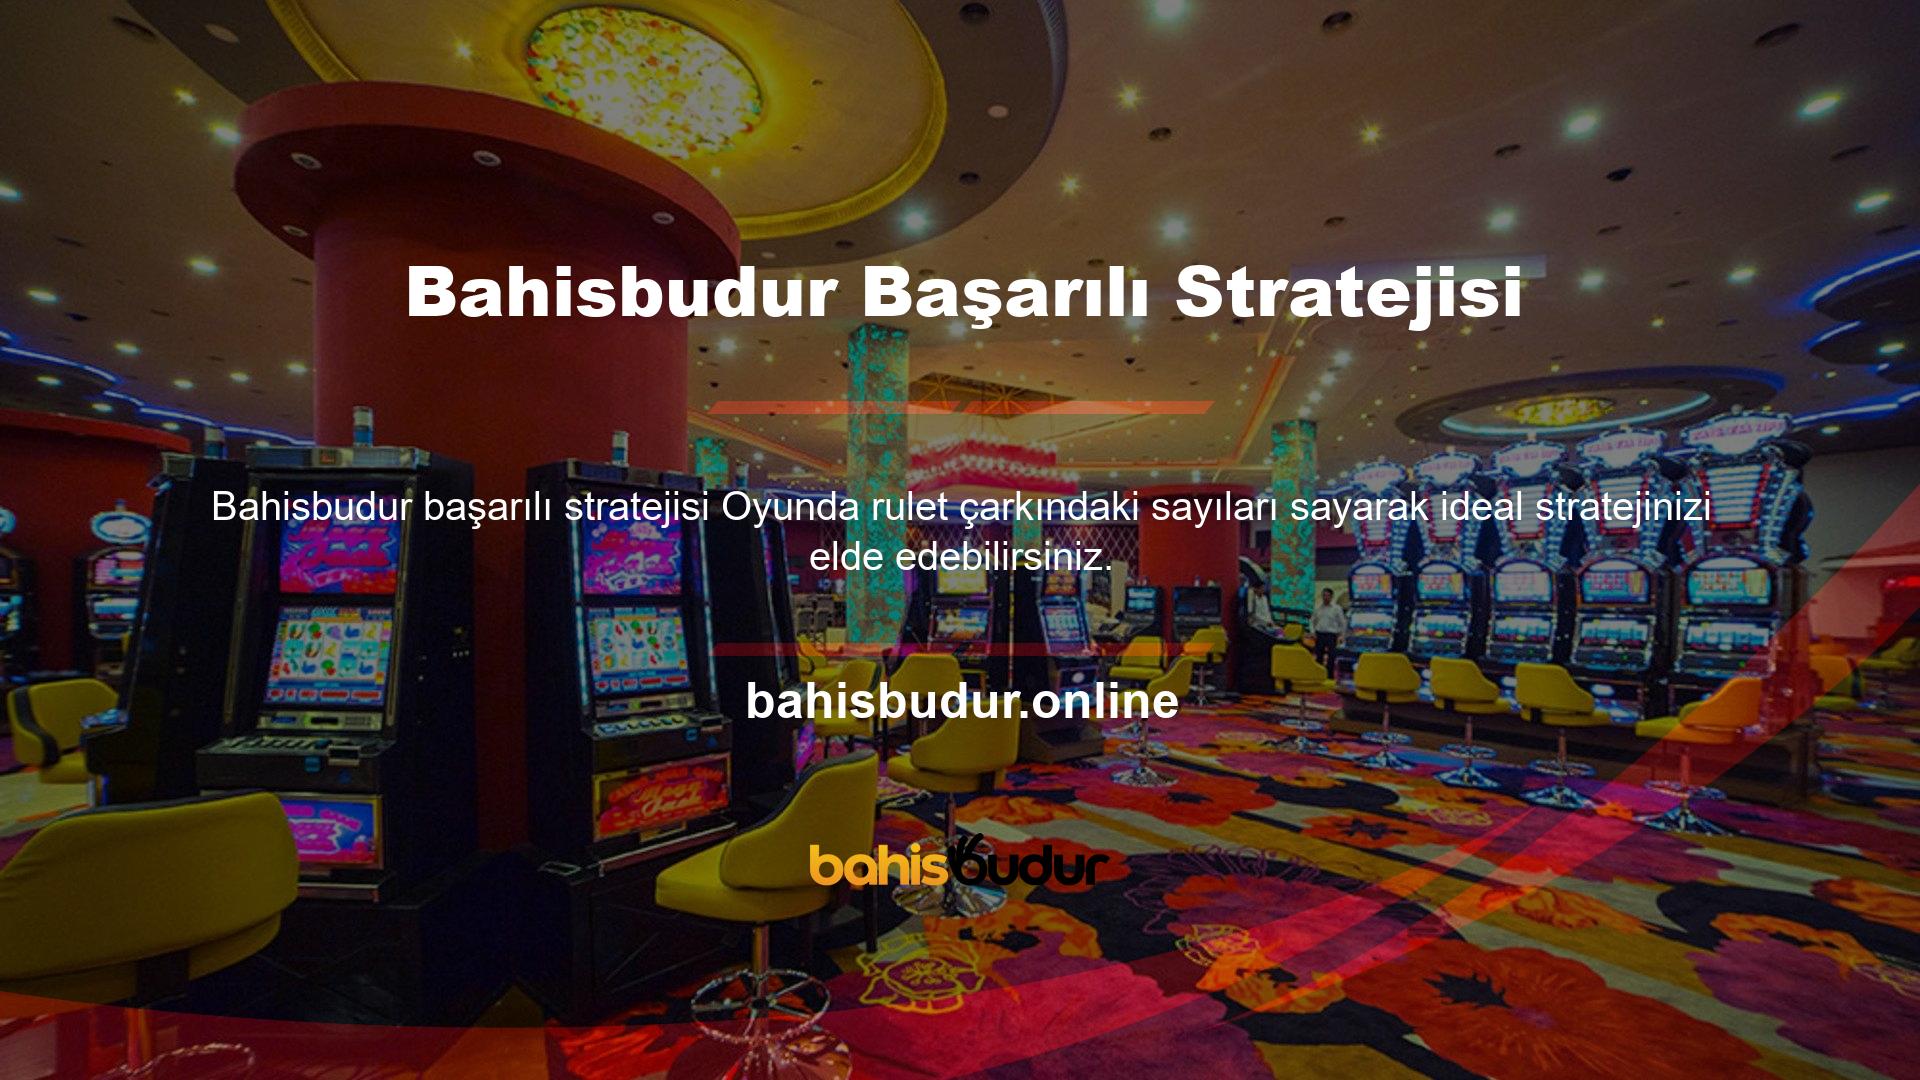 Bahisbudur başarılı stratejisi